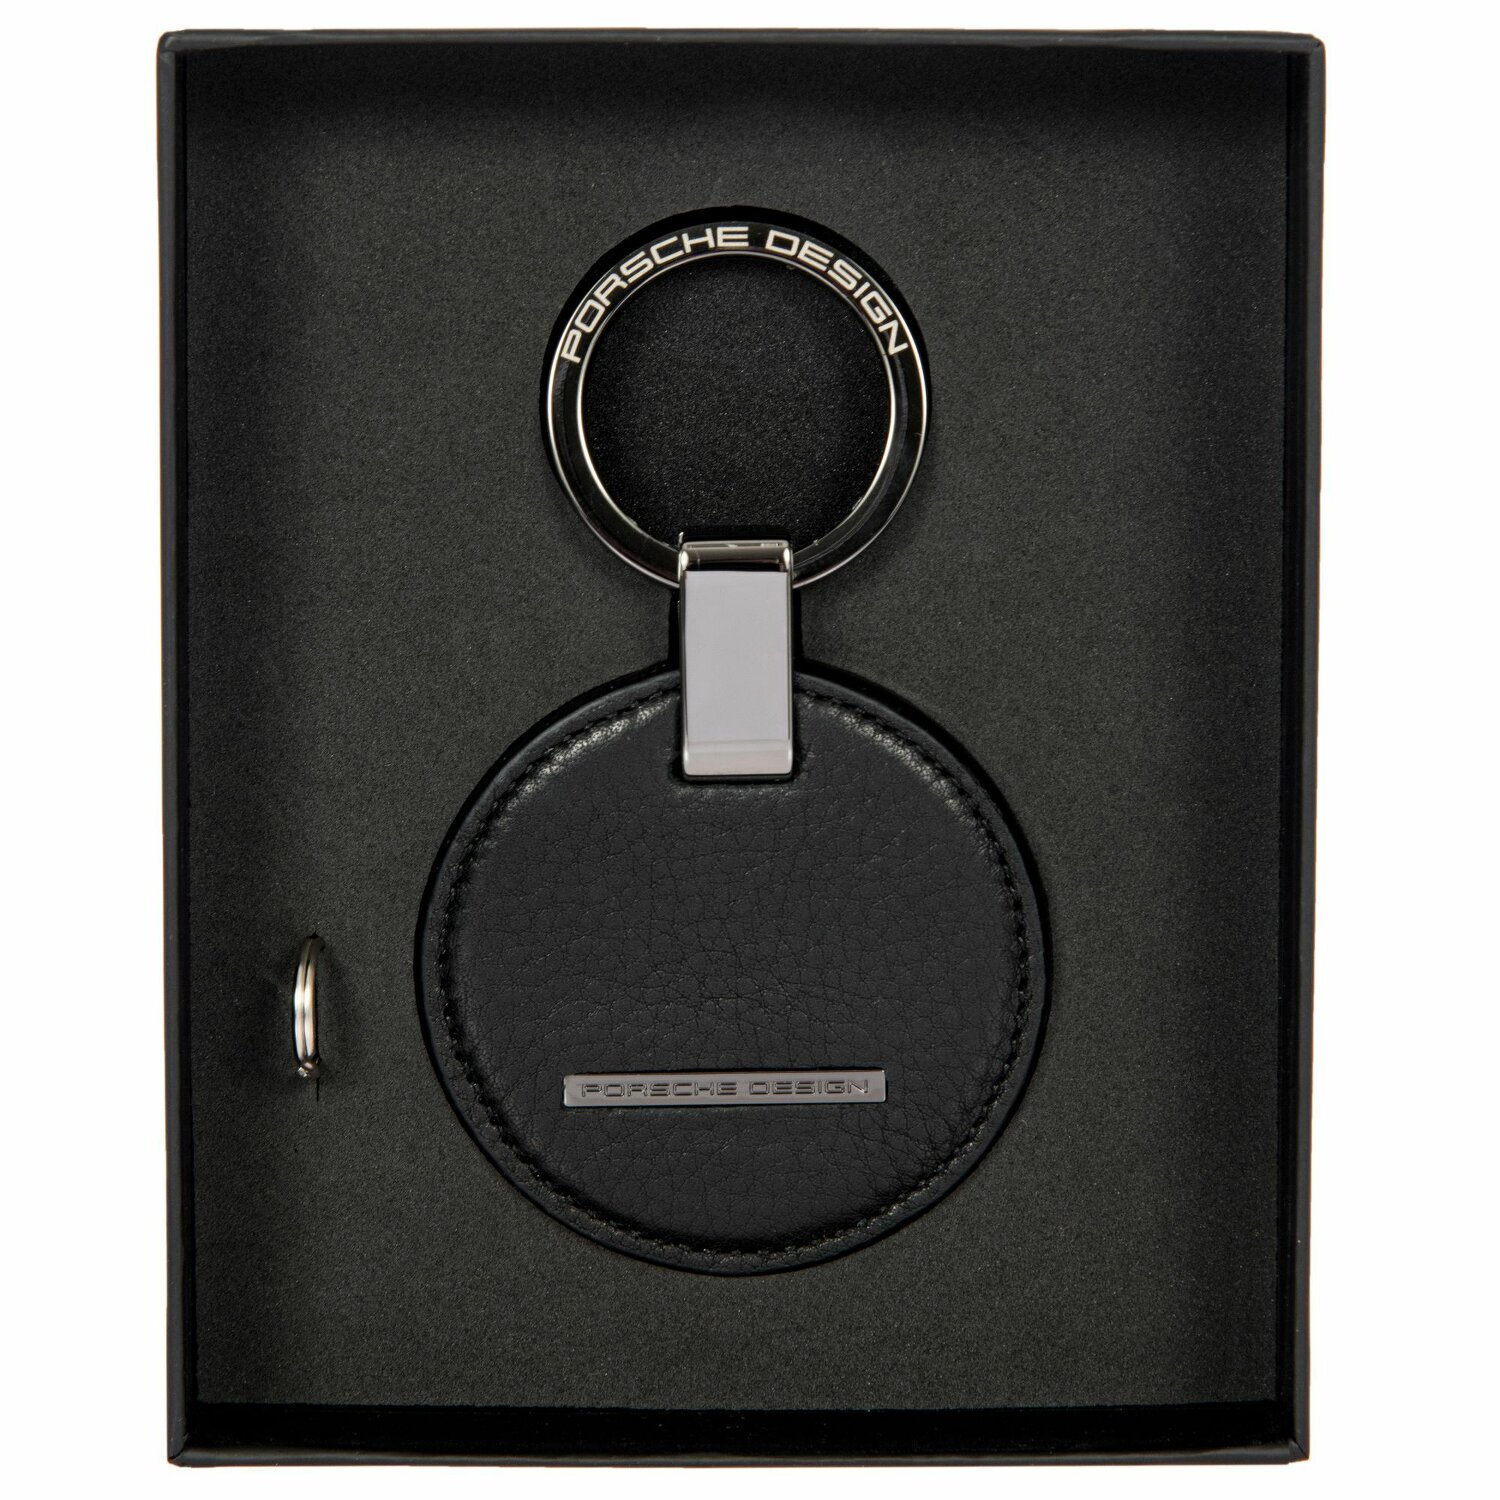 Porsche Design Schlüsselanhänger Leder 9 cm black